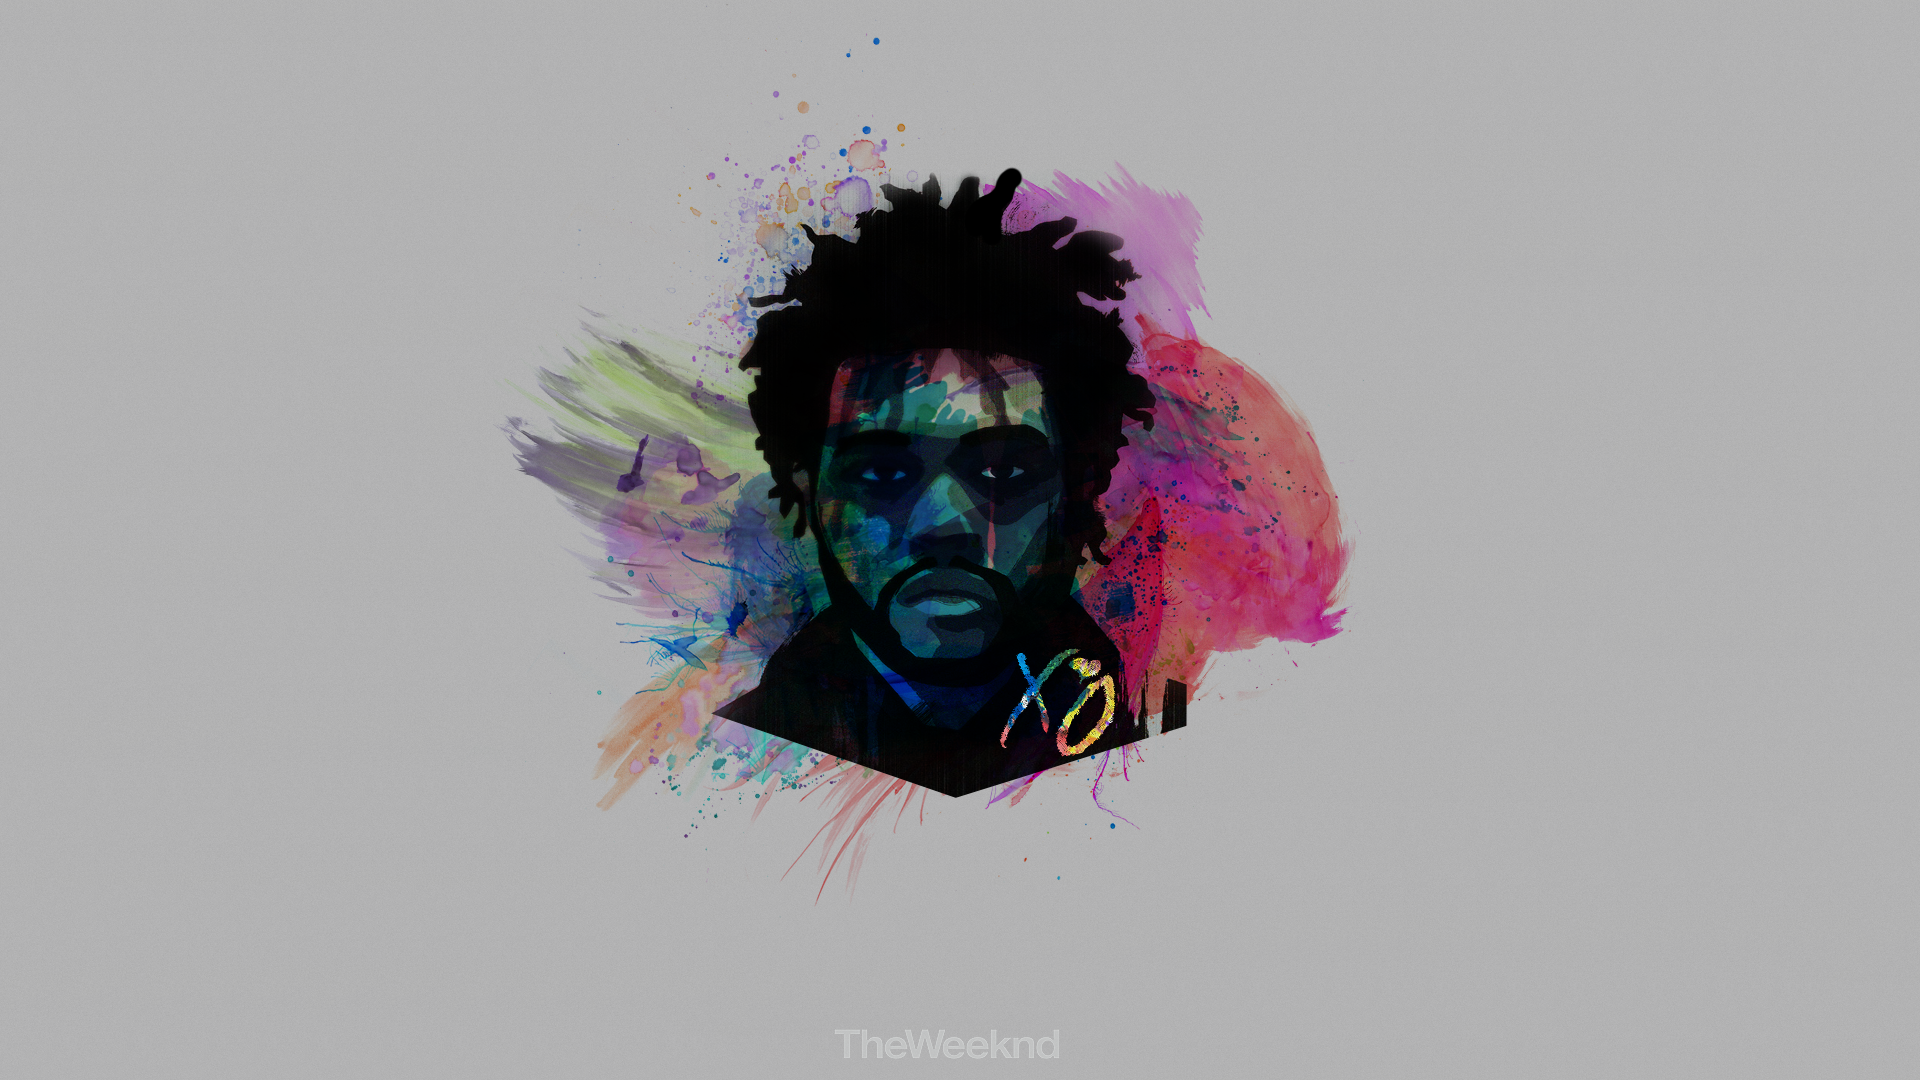 The Weeknd HD Rap Wallpaper